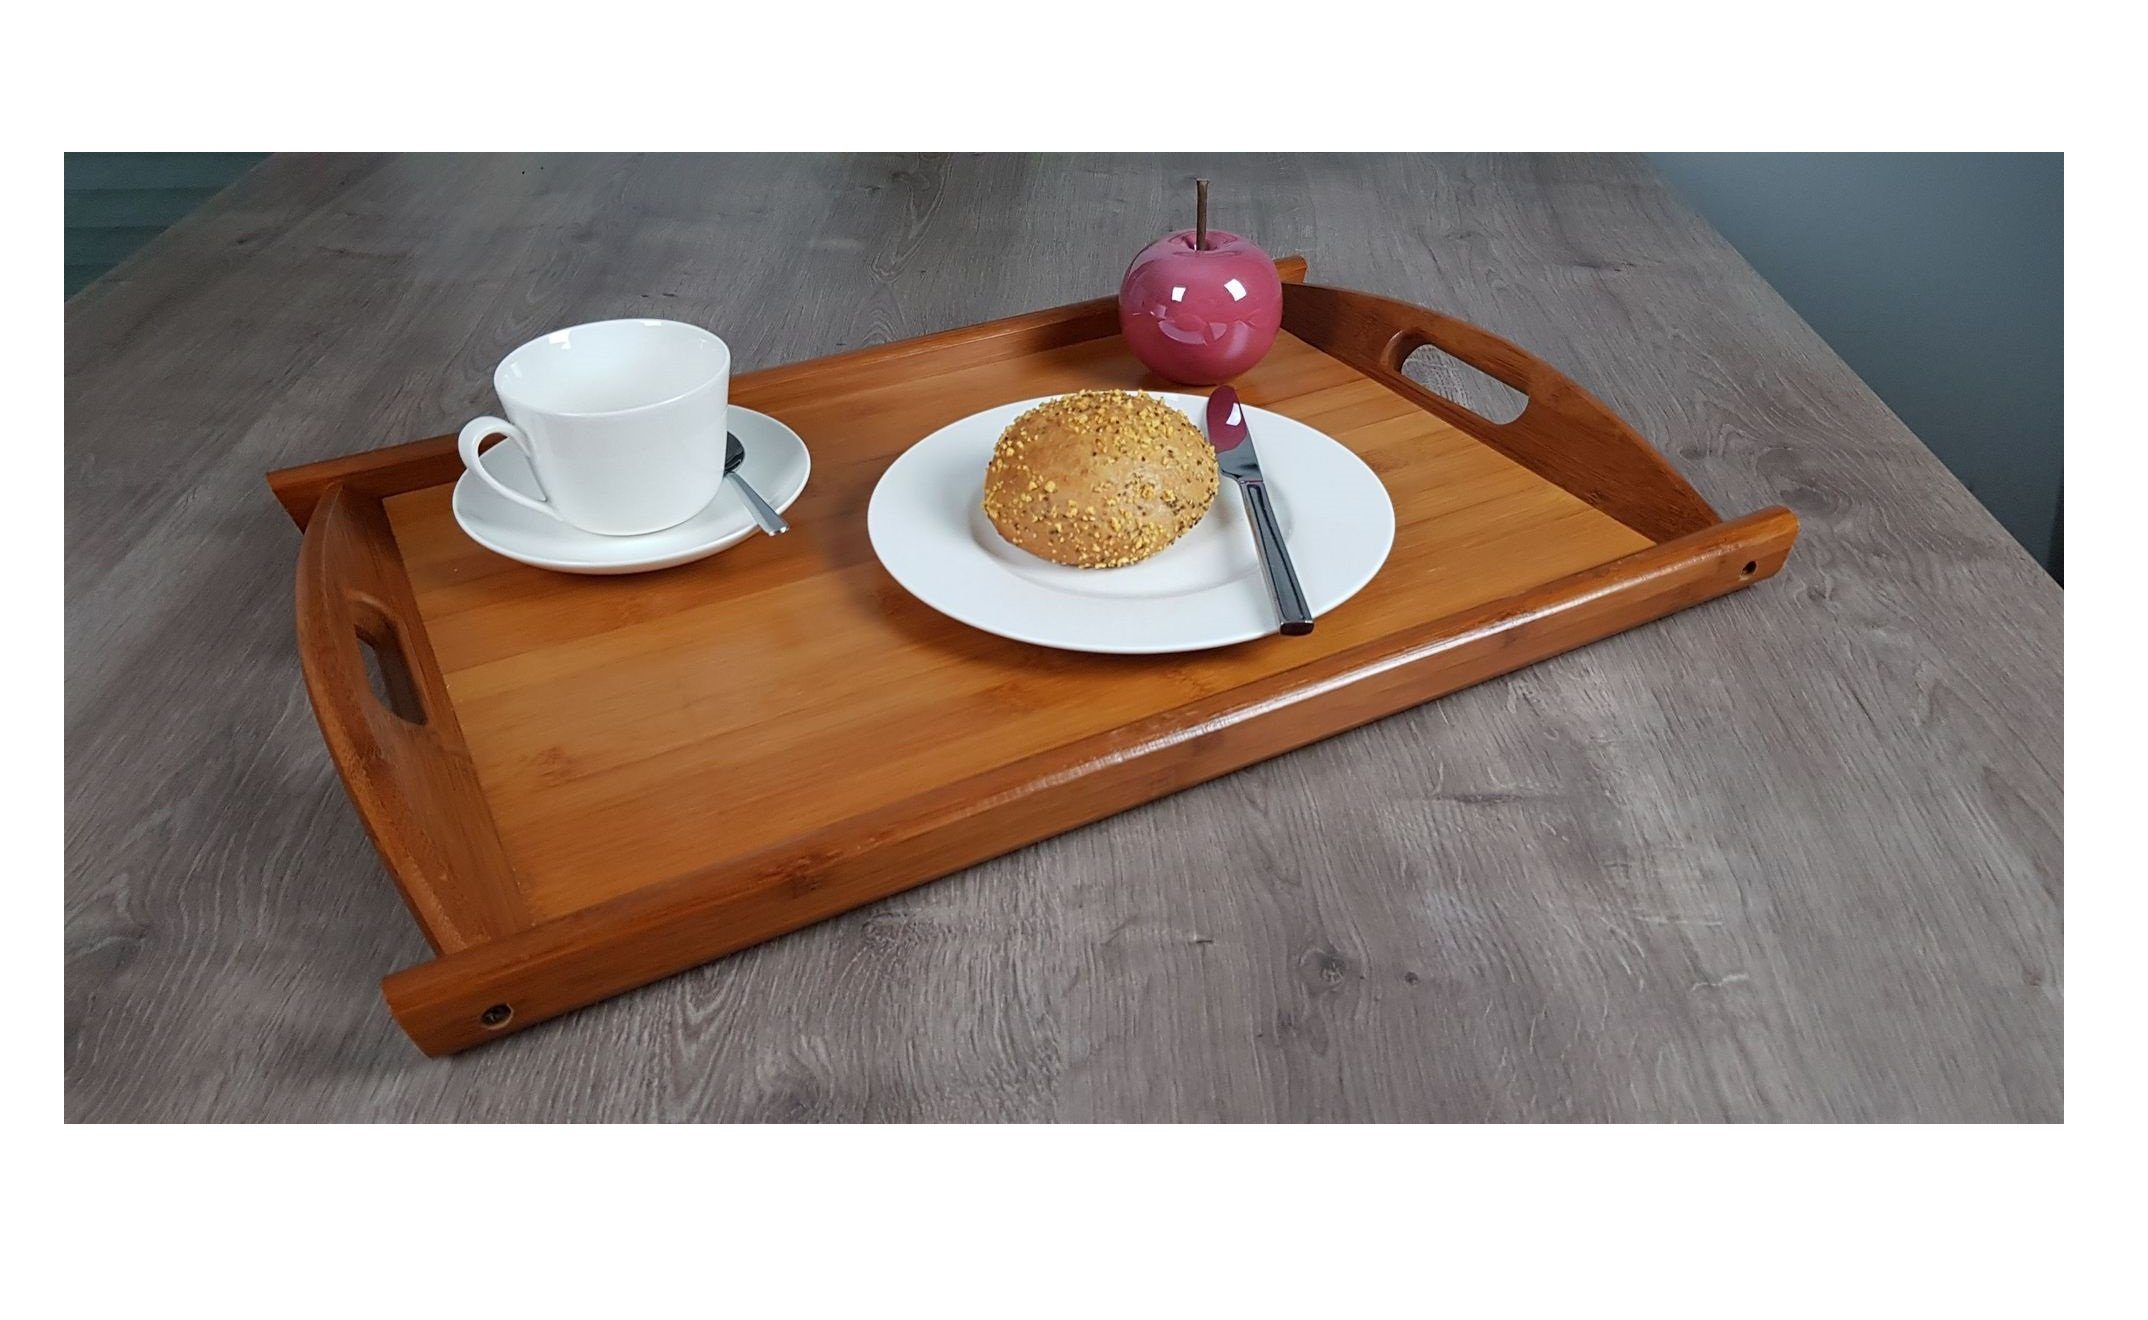 GartenHero Tablett Tablett Holz Serviertablett Frühstückstablett  Kellnertablett Serving Plate Brett, Holz